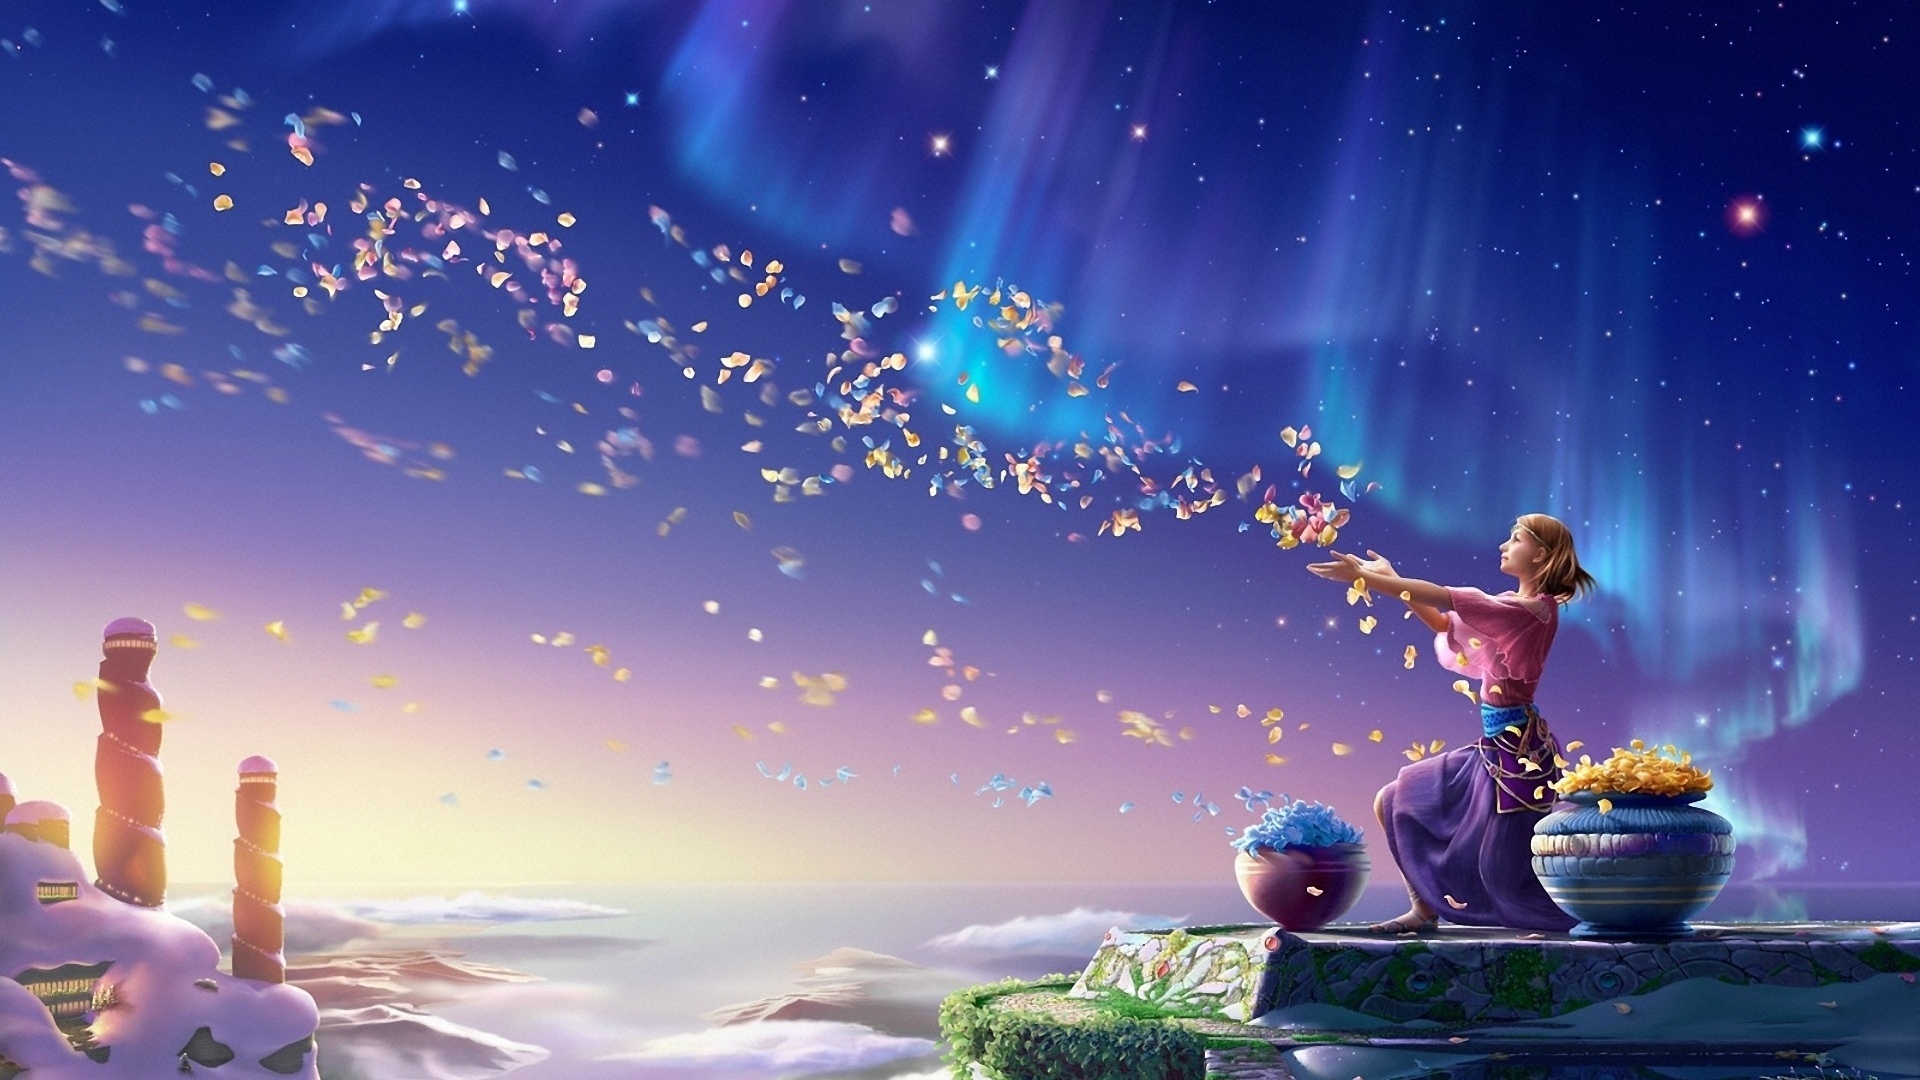 Девушка на фоне ночного неба бросает в воздух над городом лепестки цветов из стоящих рядом больших ваз